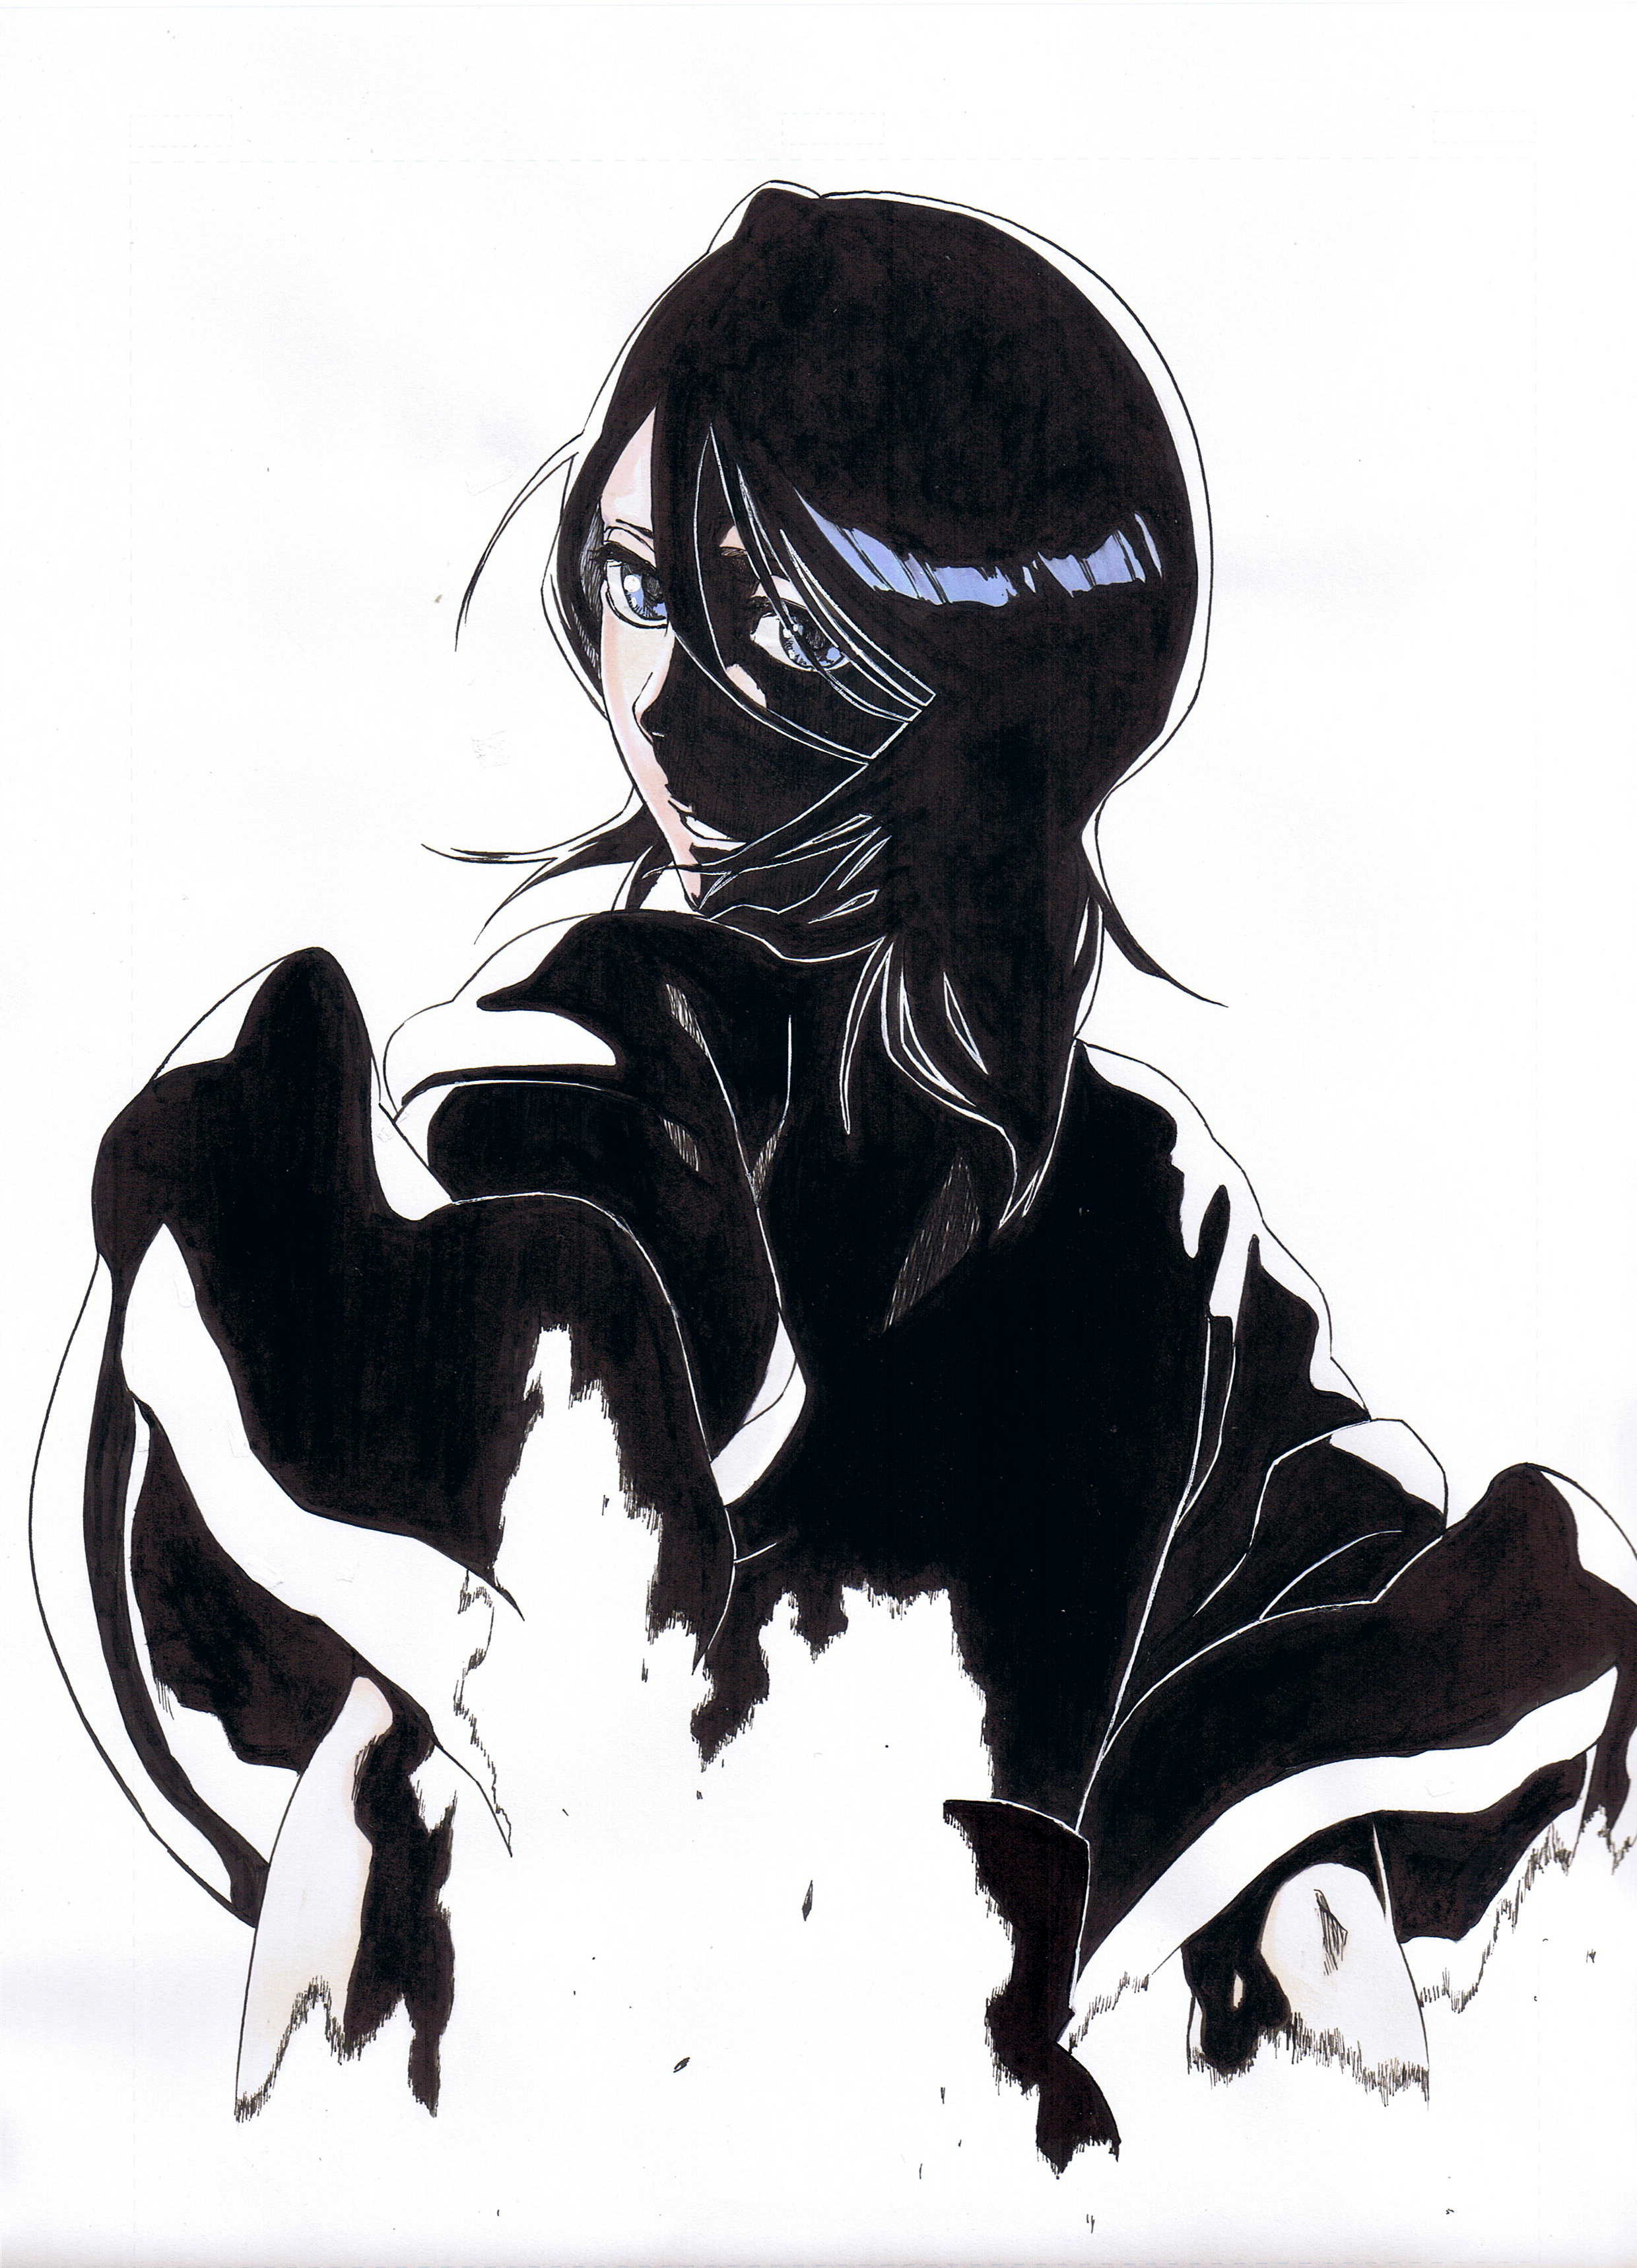 私は貴様を絶対に許さぬ 朽木ルキアのイラスト特集 朽木ルキア生誕祭19 の画像 05 Rukia